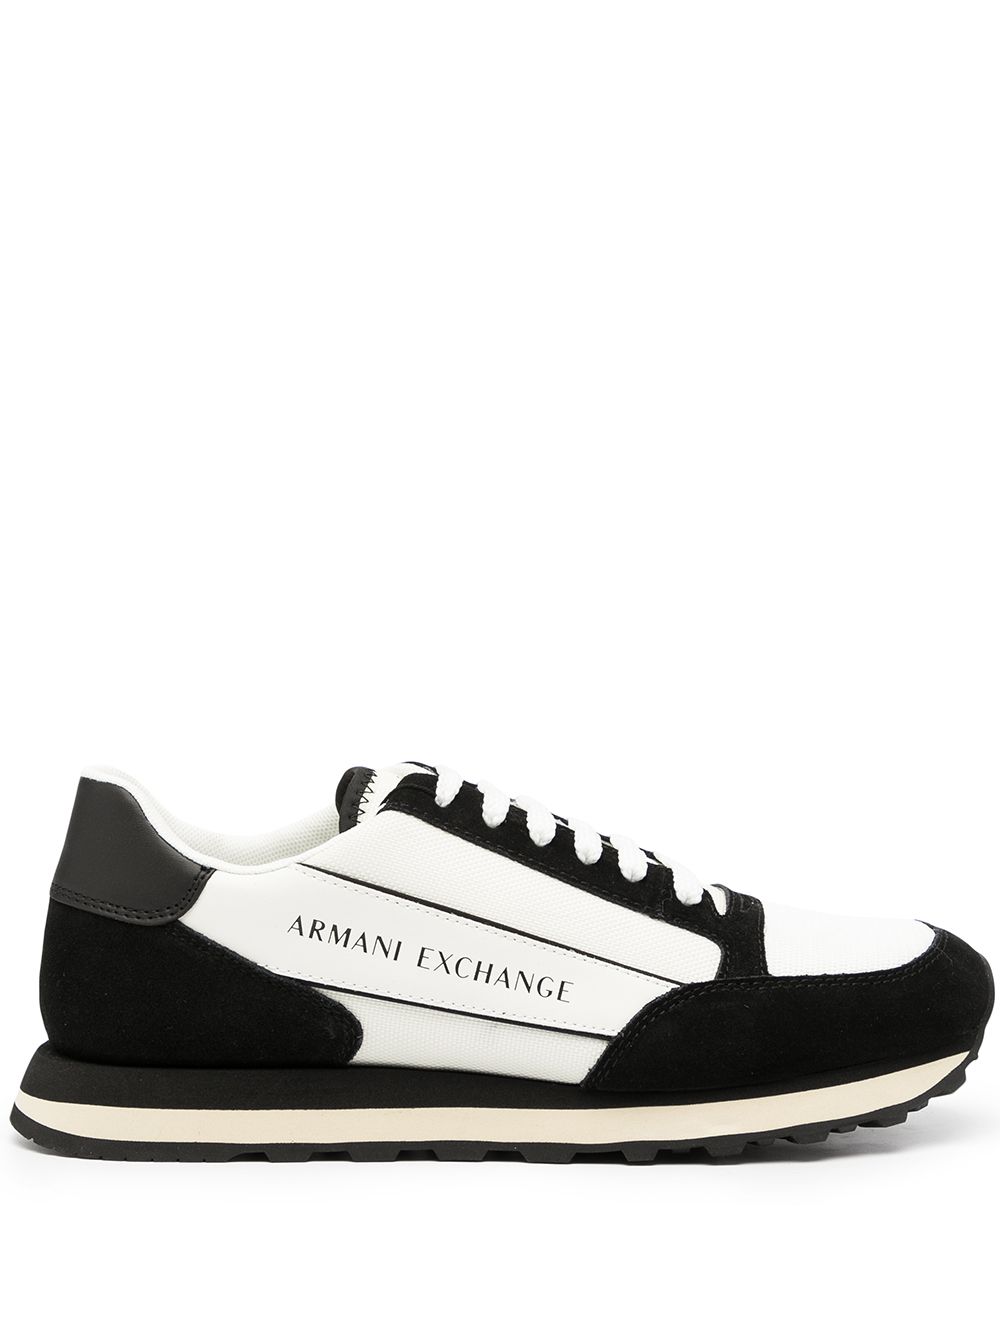 фото Armani exchange кроссовки с логотипом